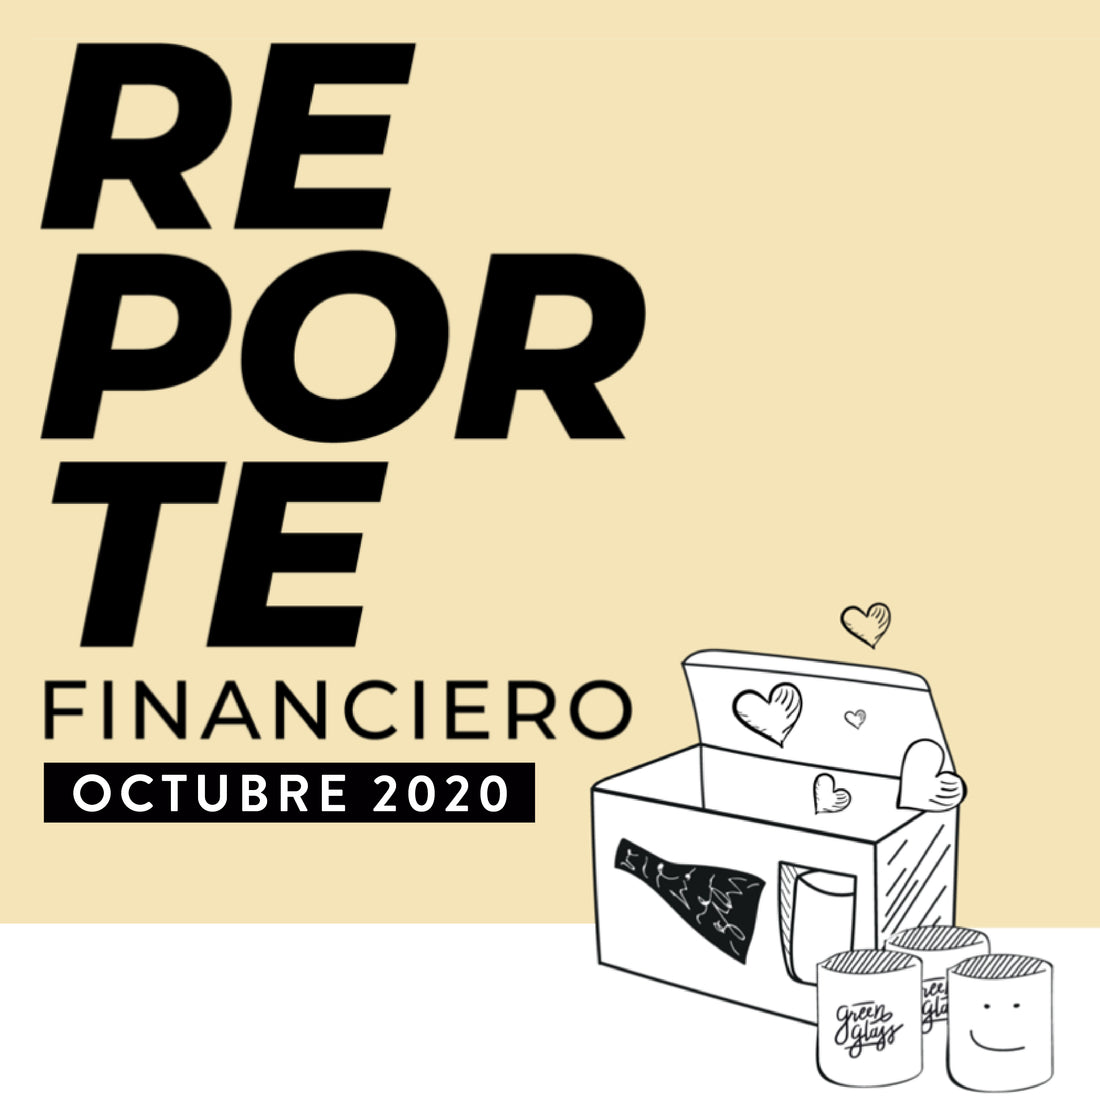 Reporte Financiero Octubre 2020